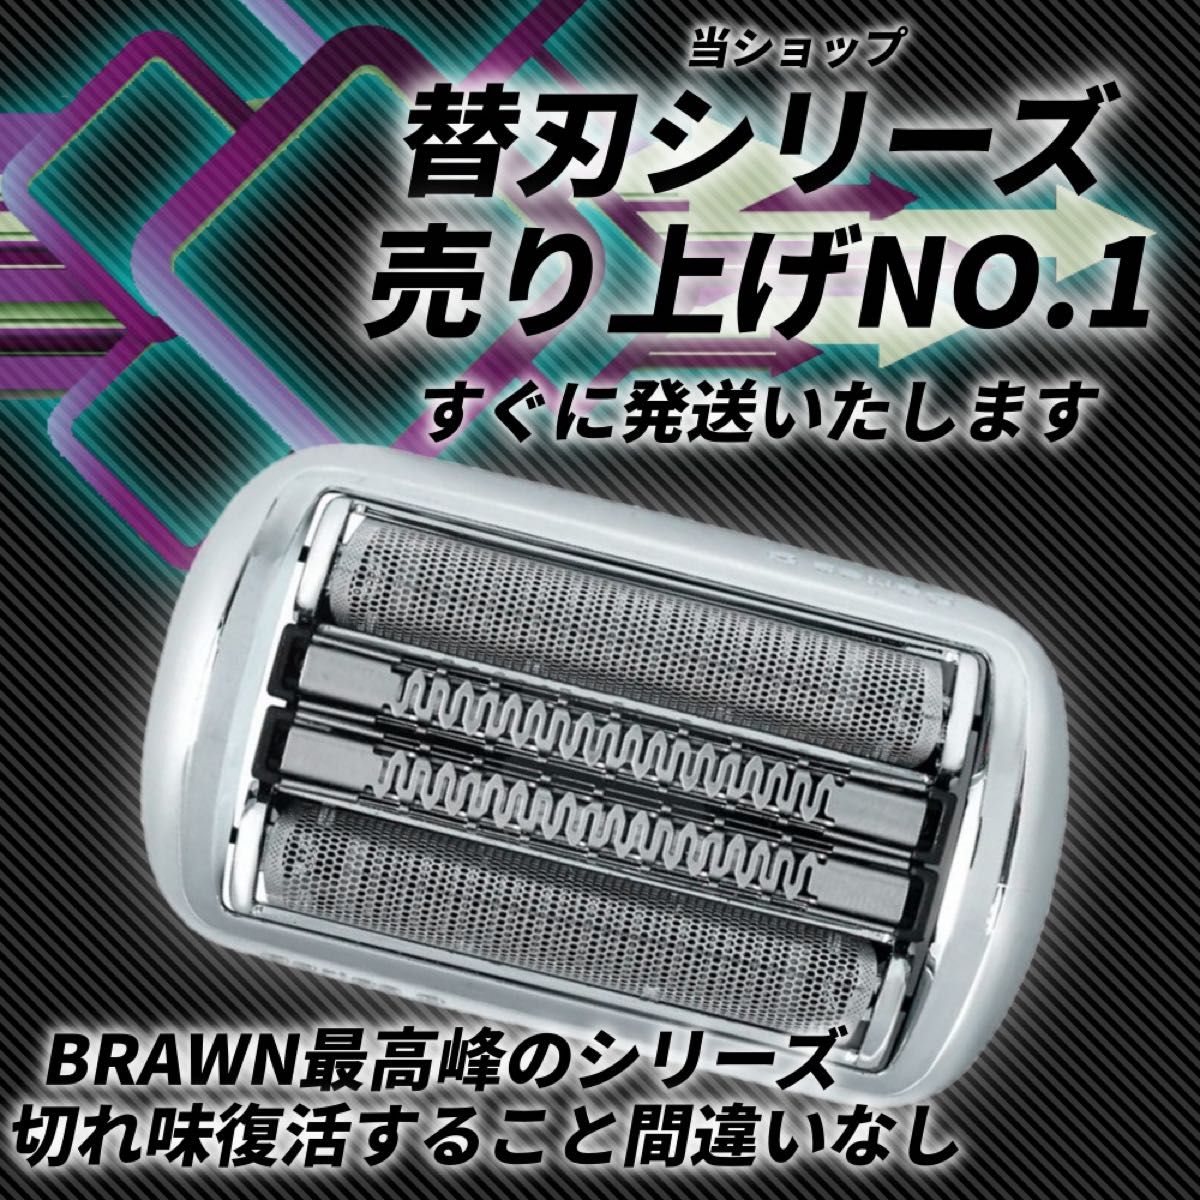 ブラウン シリーズ9 F/C92S 対応 替刃 替え刃 網刃 内刃 一体型高品質 互換品 brawn